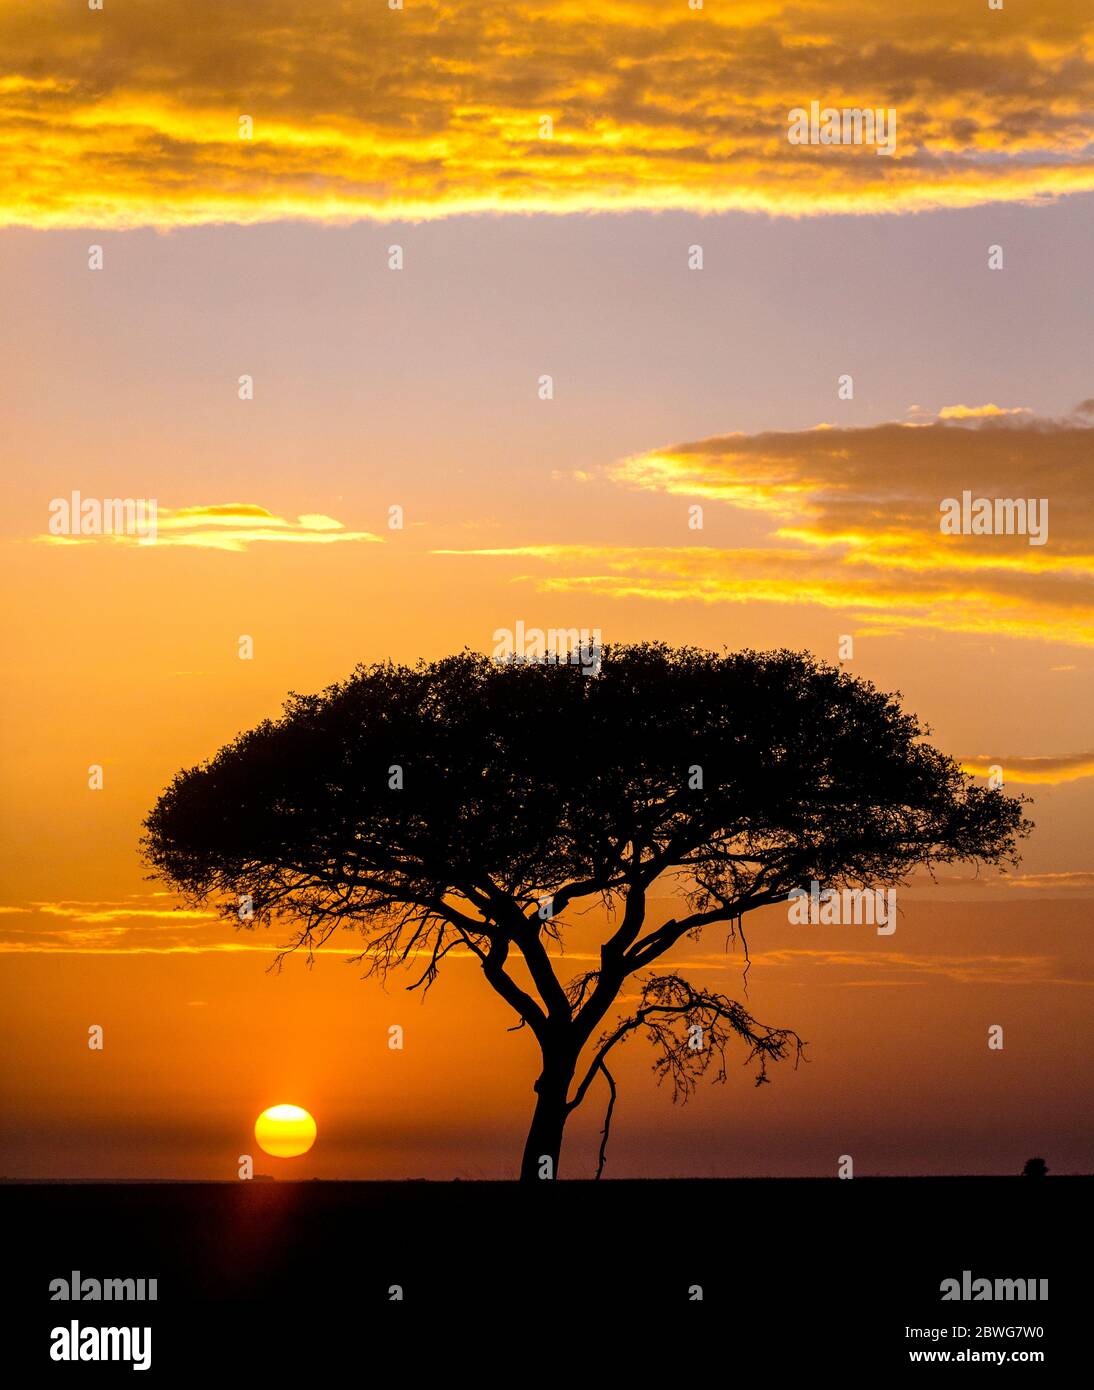 Silhouette d'acacia tortilis (Forssk.) arbre isolé au lever du soleil, Parc national du Serengeti, Tanzanie, Afrique Banque D'Images